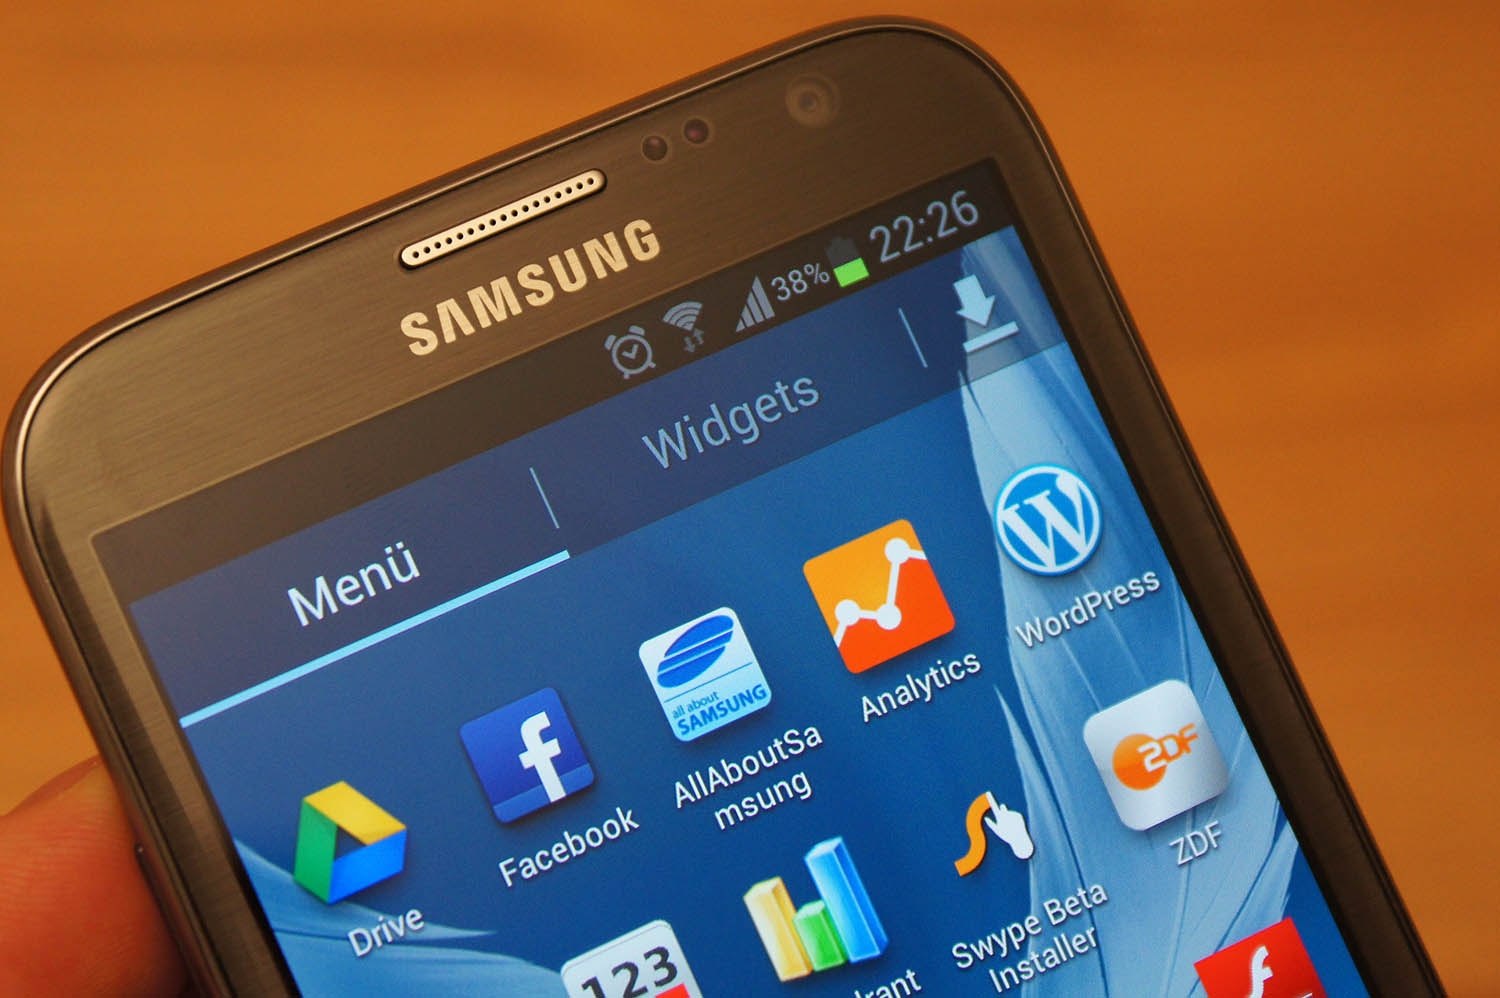 Samsung Galaxy Note 2. Samsung Galaxy gt. Samsung Galaxy Note 2 Android 4.4. Samsung Galaxy Note 22.